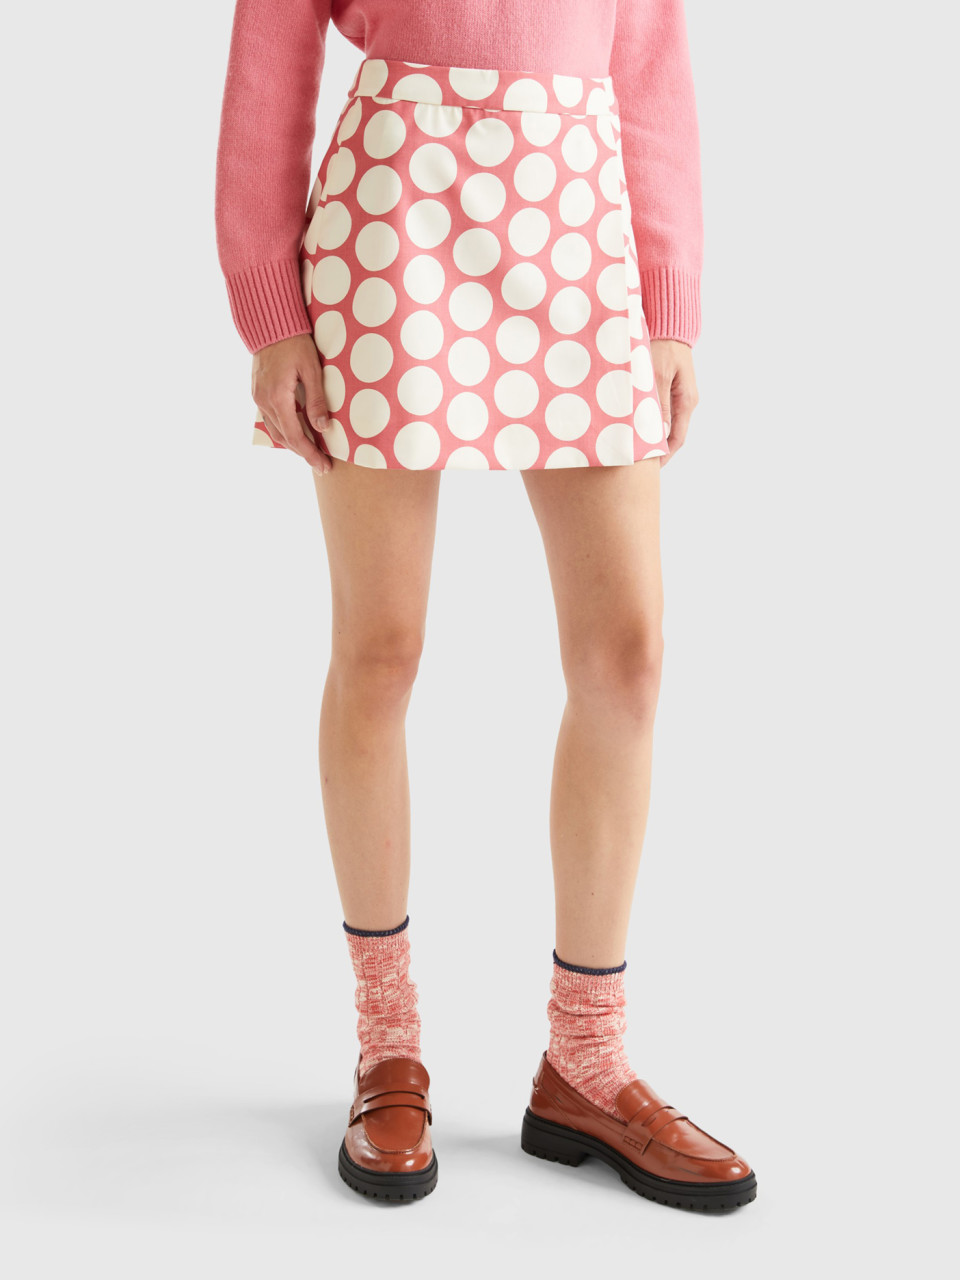 Benetton, Polka Dot Mini Skirt, Pink, Women